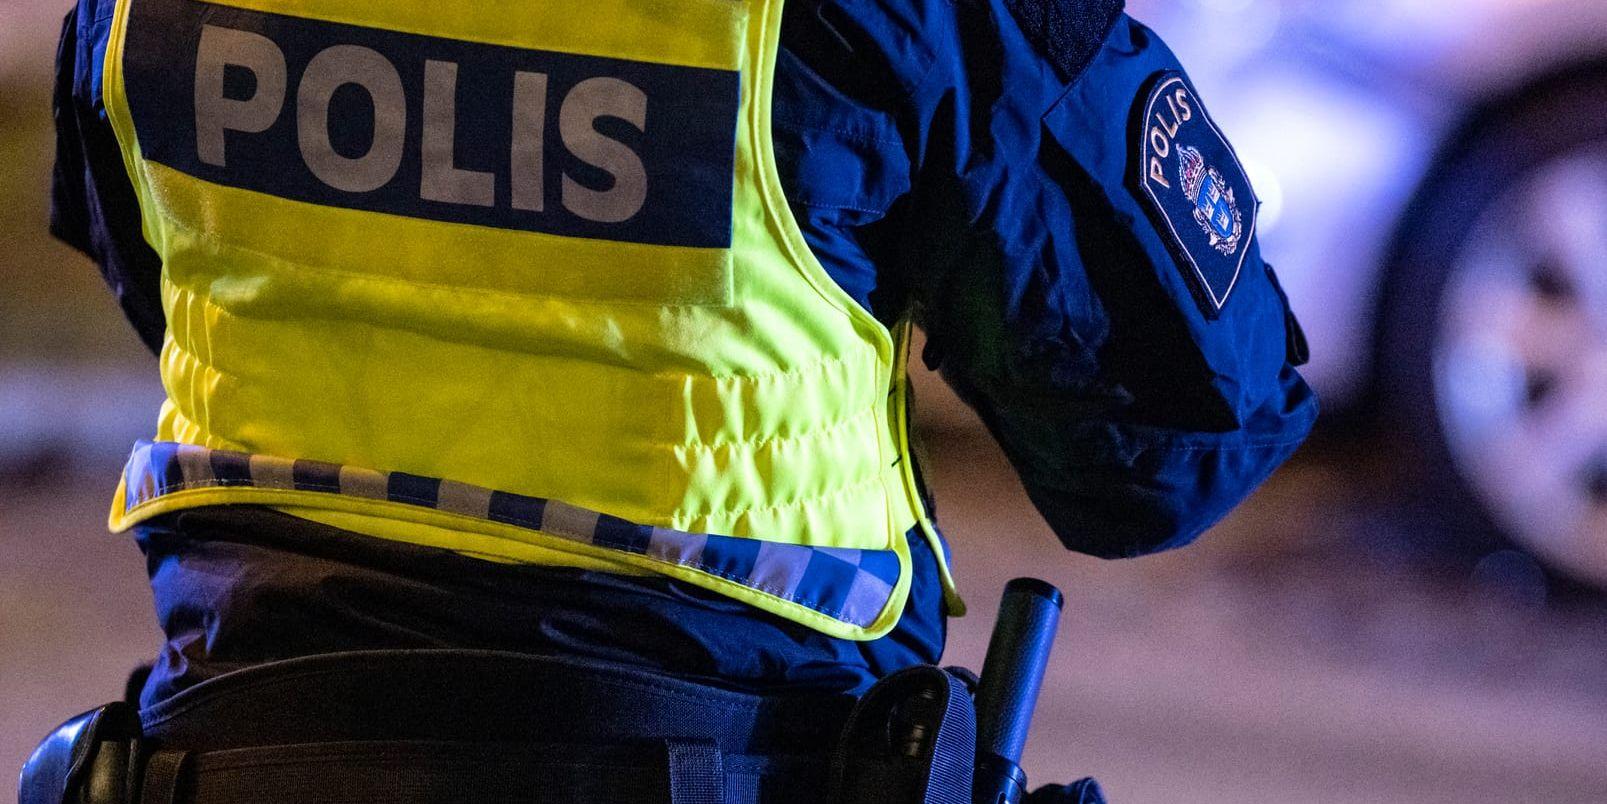 Kvinnan hittades död i en frys i en bostad i västra Värmland i torsdags, enligt polisen. Arkivbild.